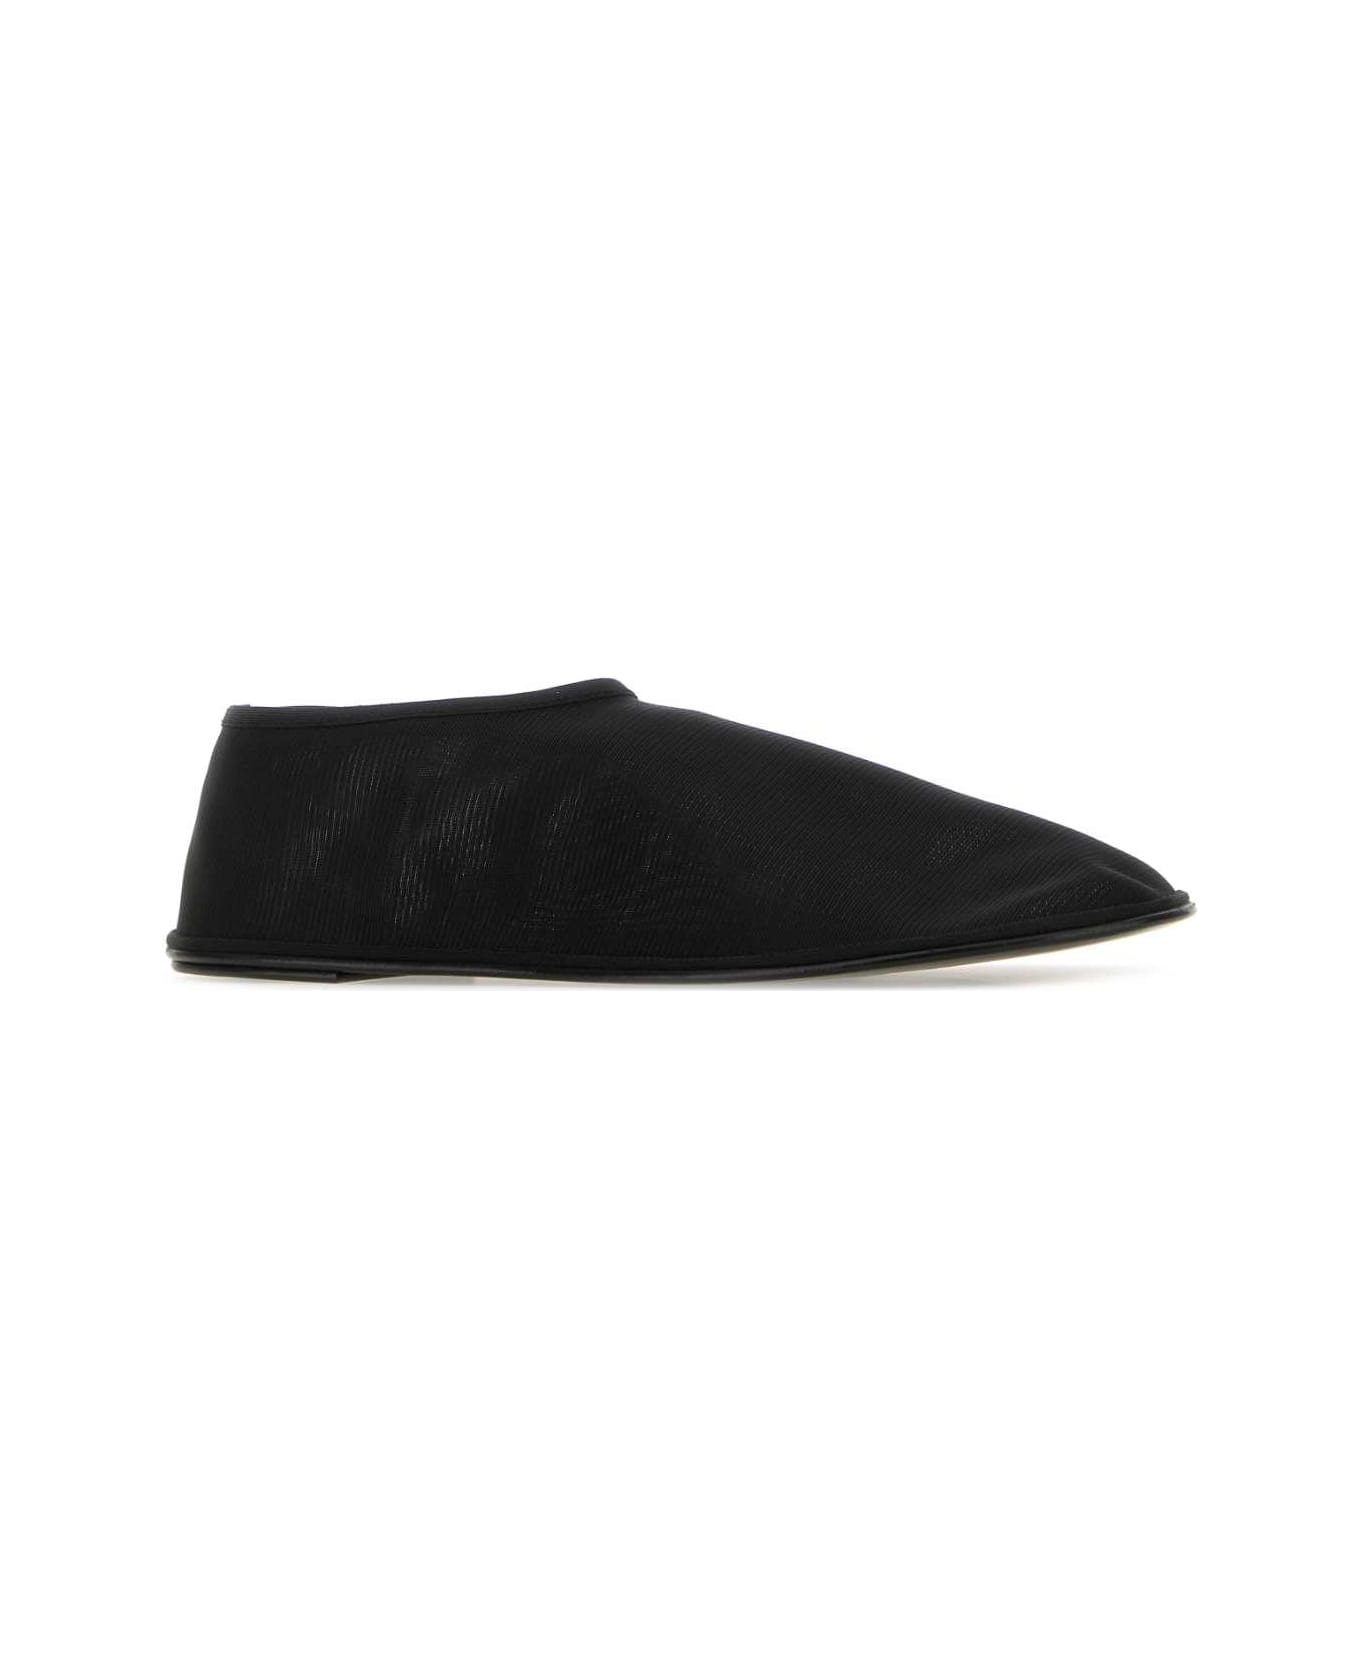 The Row Black Nylon Socks Slip Ons - Black フラットシューズ